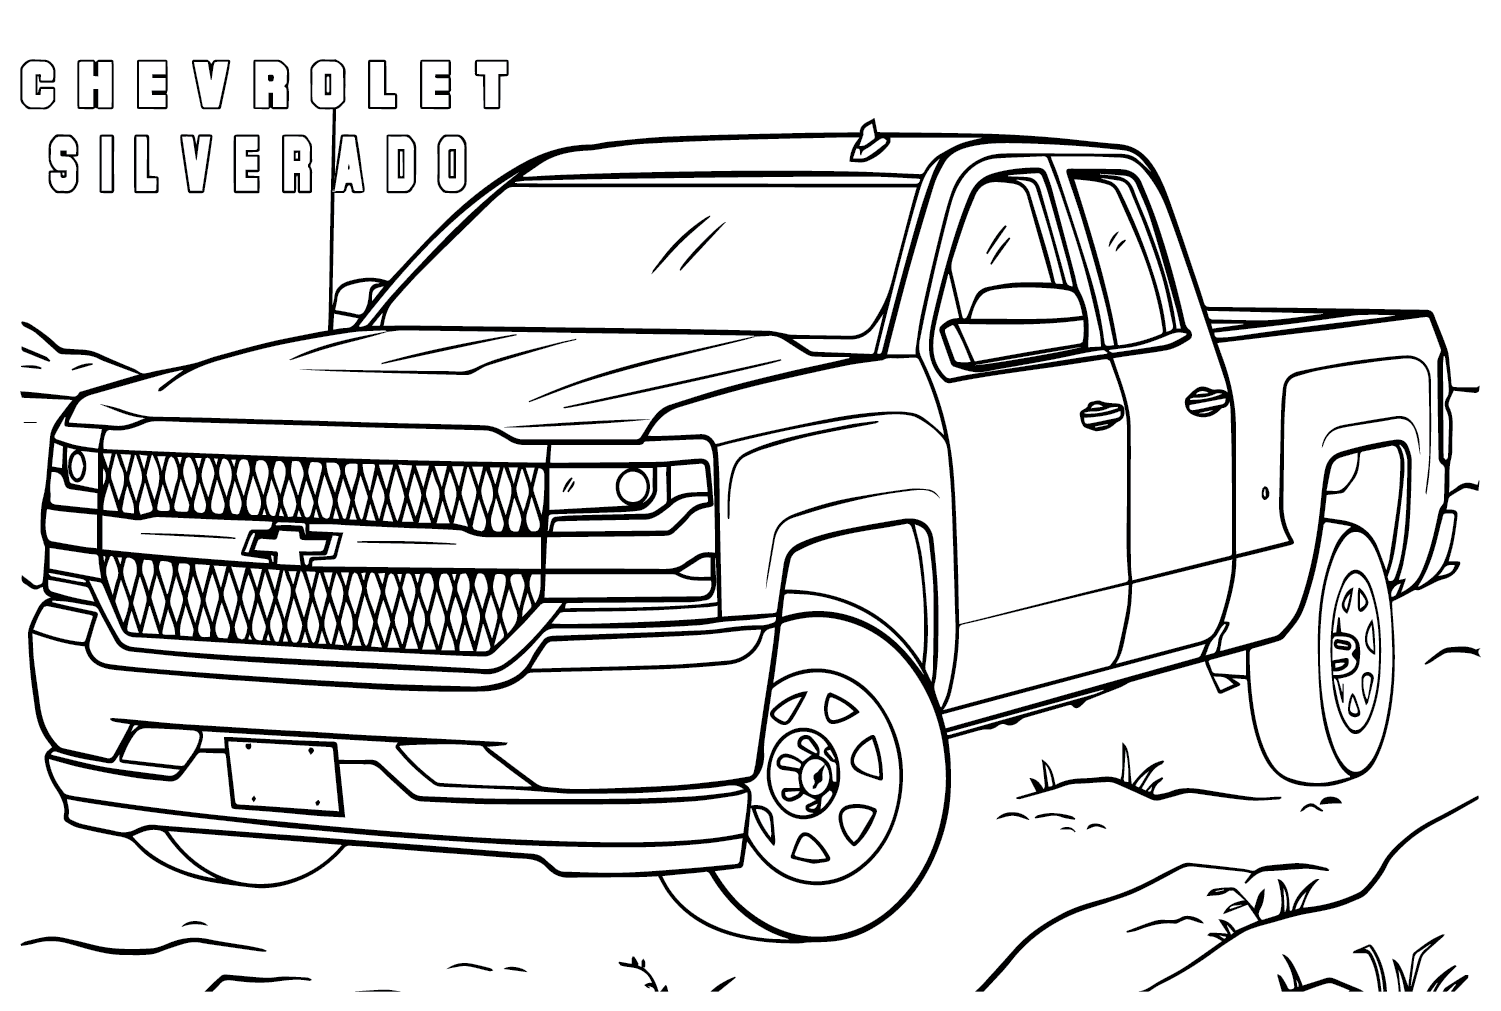 Página para colorir do Chevrolet Silverado para imprimir da Chevrolet